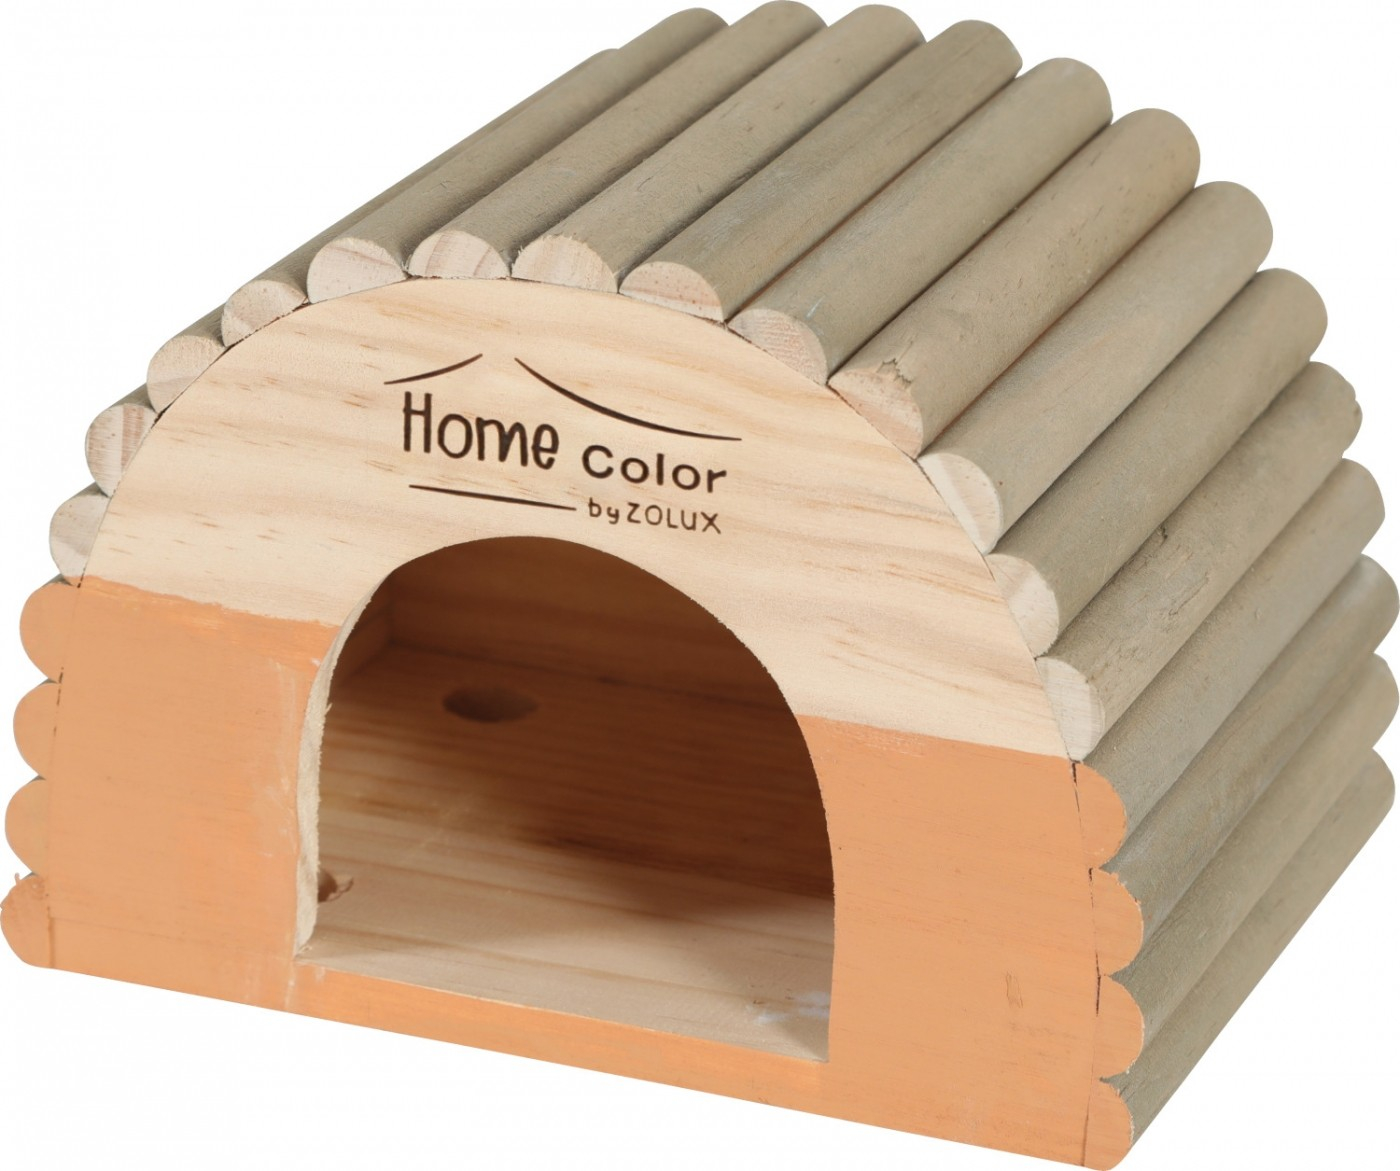 Casinha em madeira para roedores telhado redondo longo - Home color